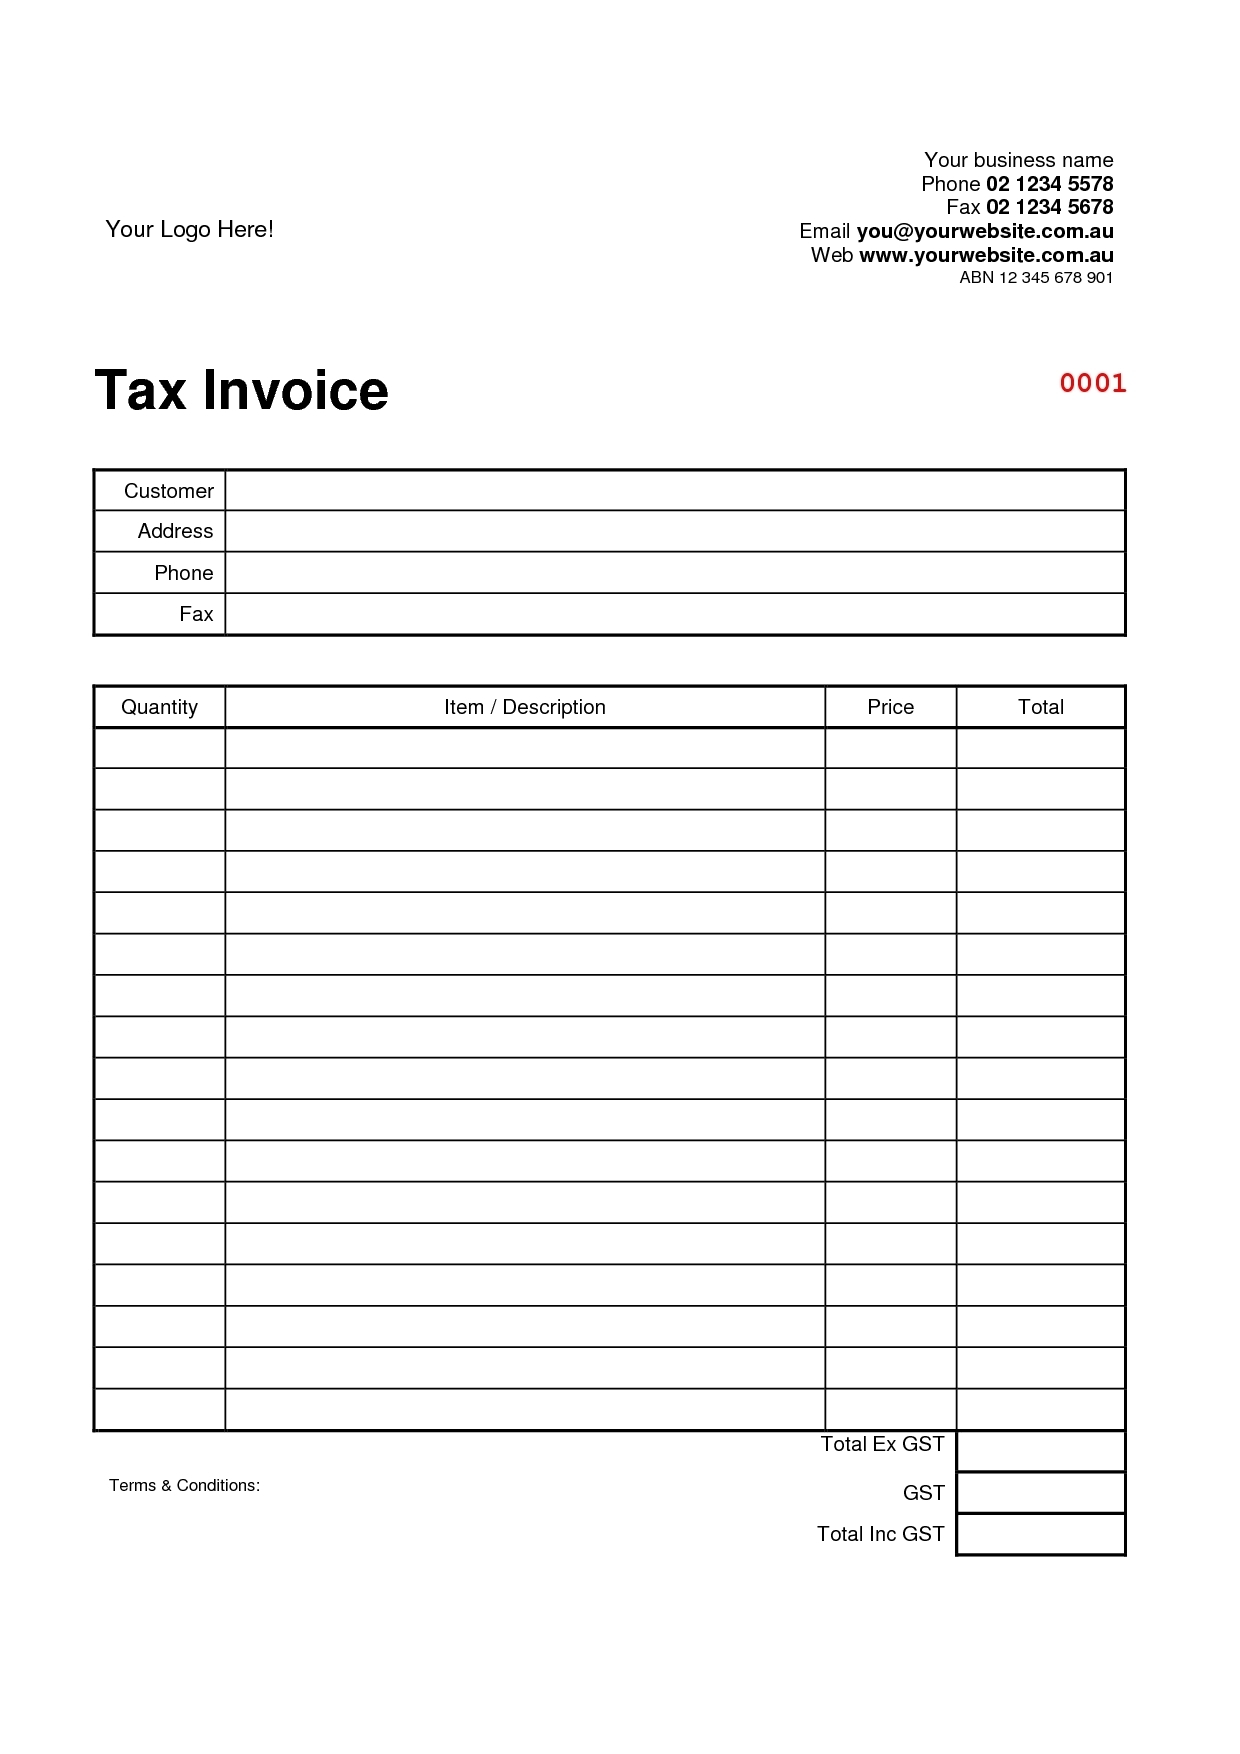 tax invoice requirements australia free tax invoice template australia download invoice template ideas 1240 X 1754